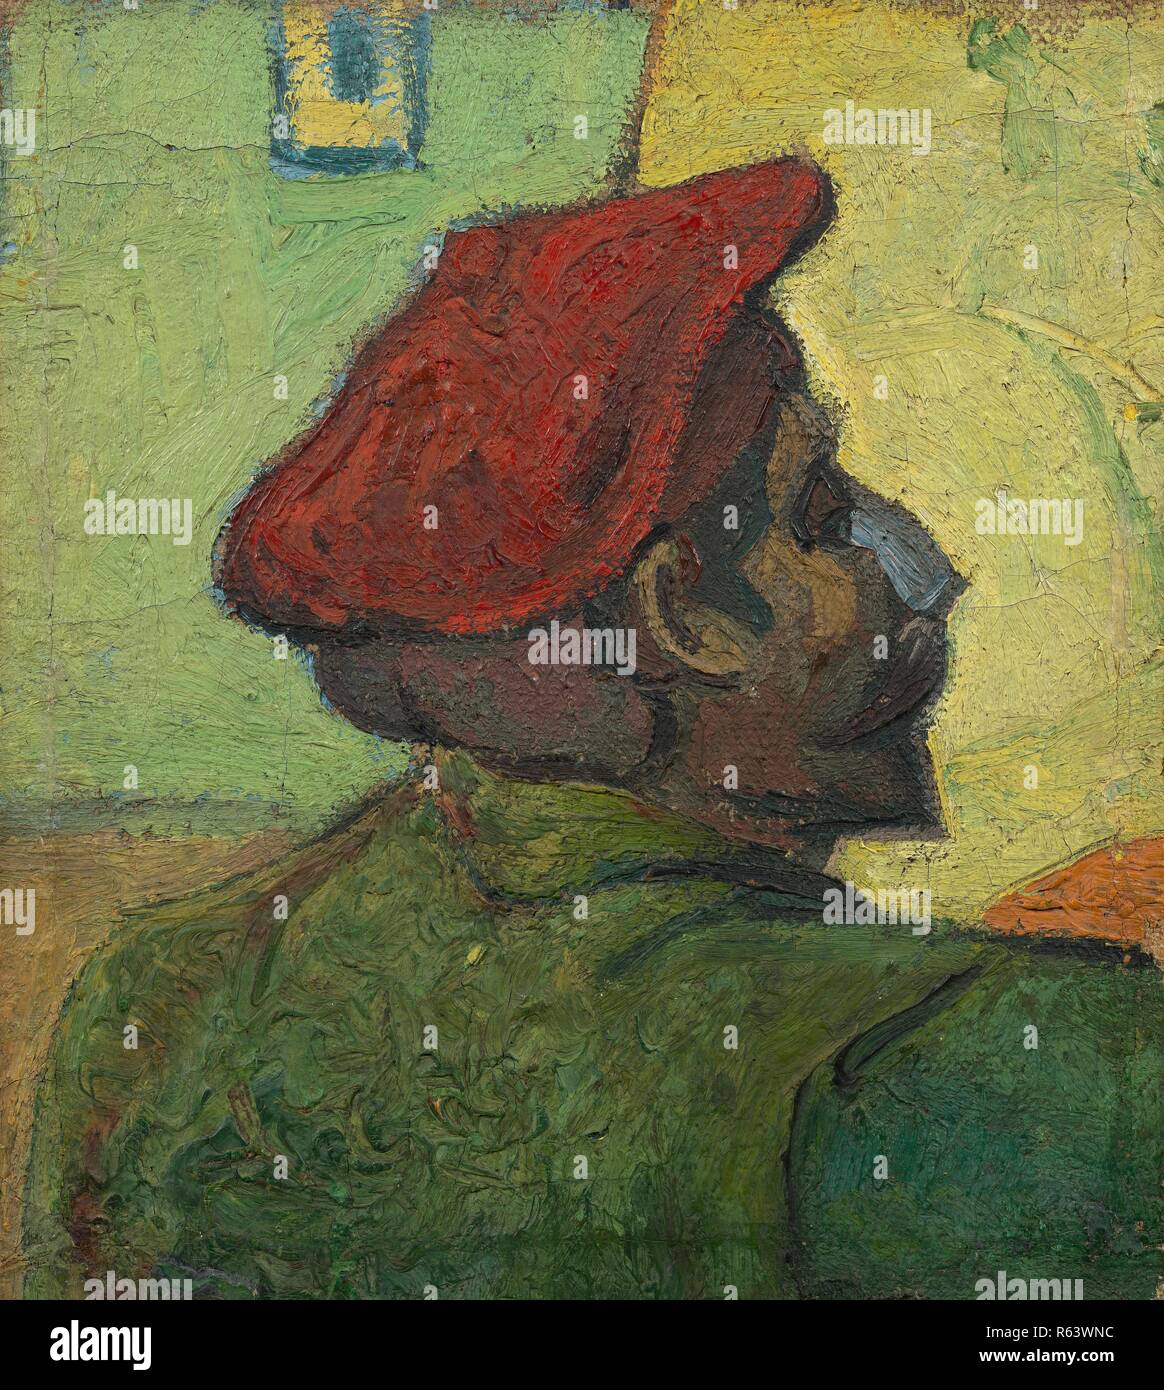 Ritratto di Gauguin. Data: Dicembre 1888, Arles. Dimensioni: 38,2 cm x 33,8 cm, 55,2 cm x 51 cm. Museo: Van Gogh Museum di Amsterdam. Autore: Van Gogh, Vincent. VINCENT VAN GOGH. Foto Stock